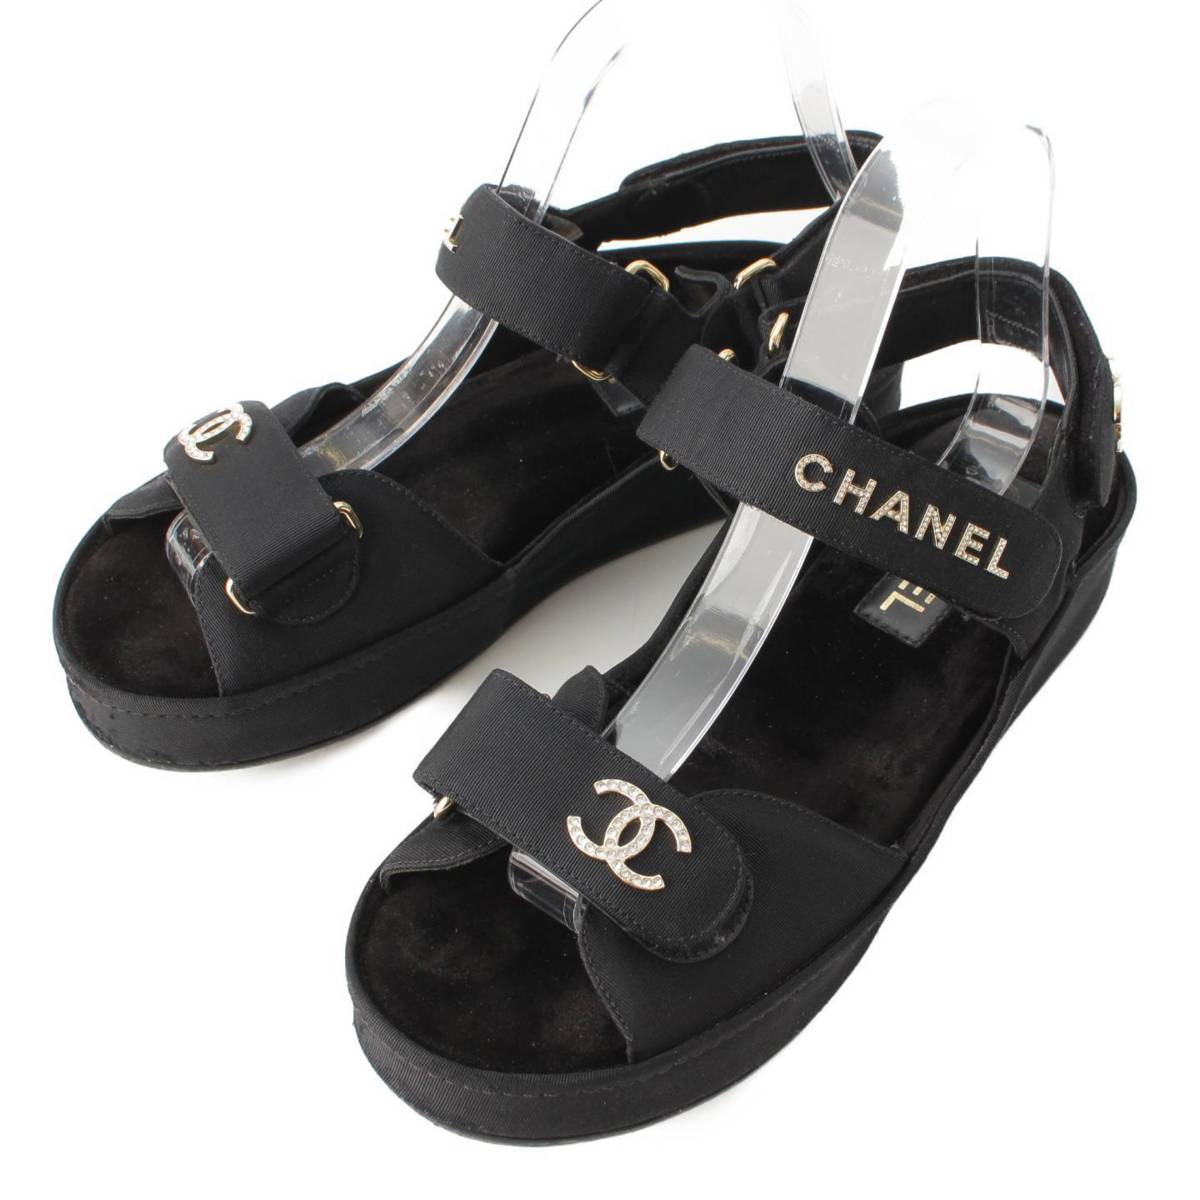 シャネル(Chanel) 21B グログラン ココマーク ロゴ ビジュー サンダル G37456 ブラック 38